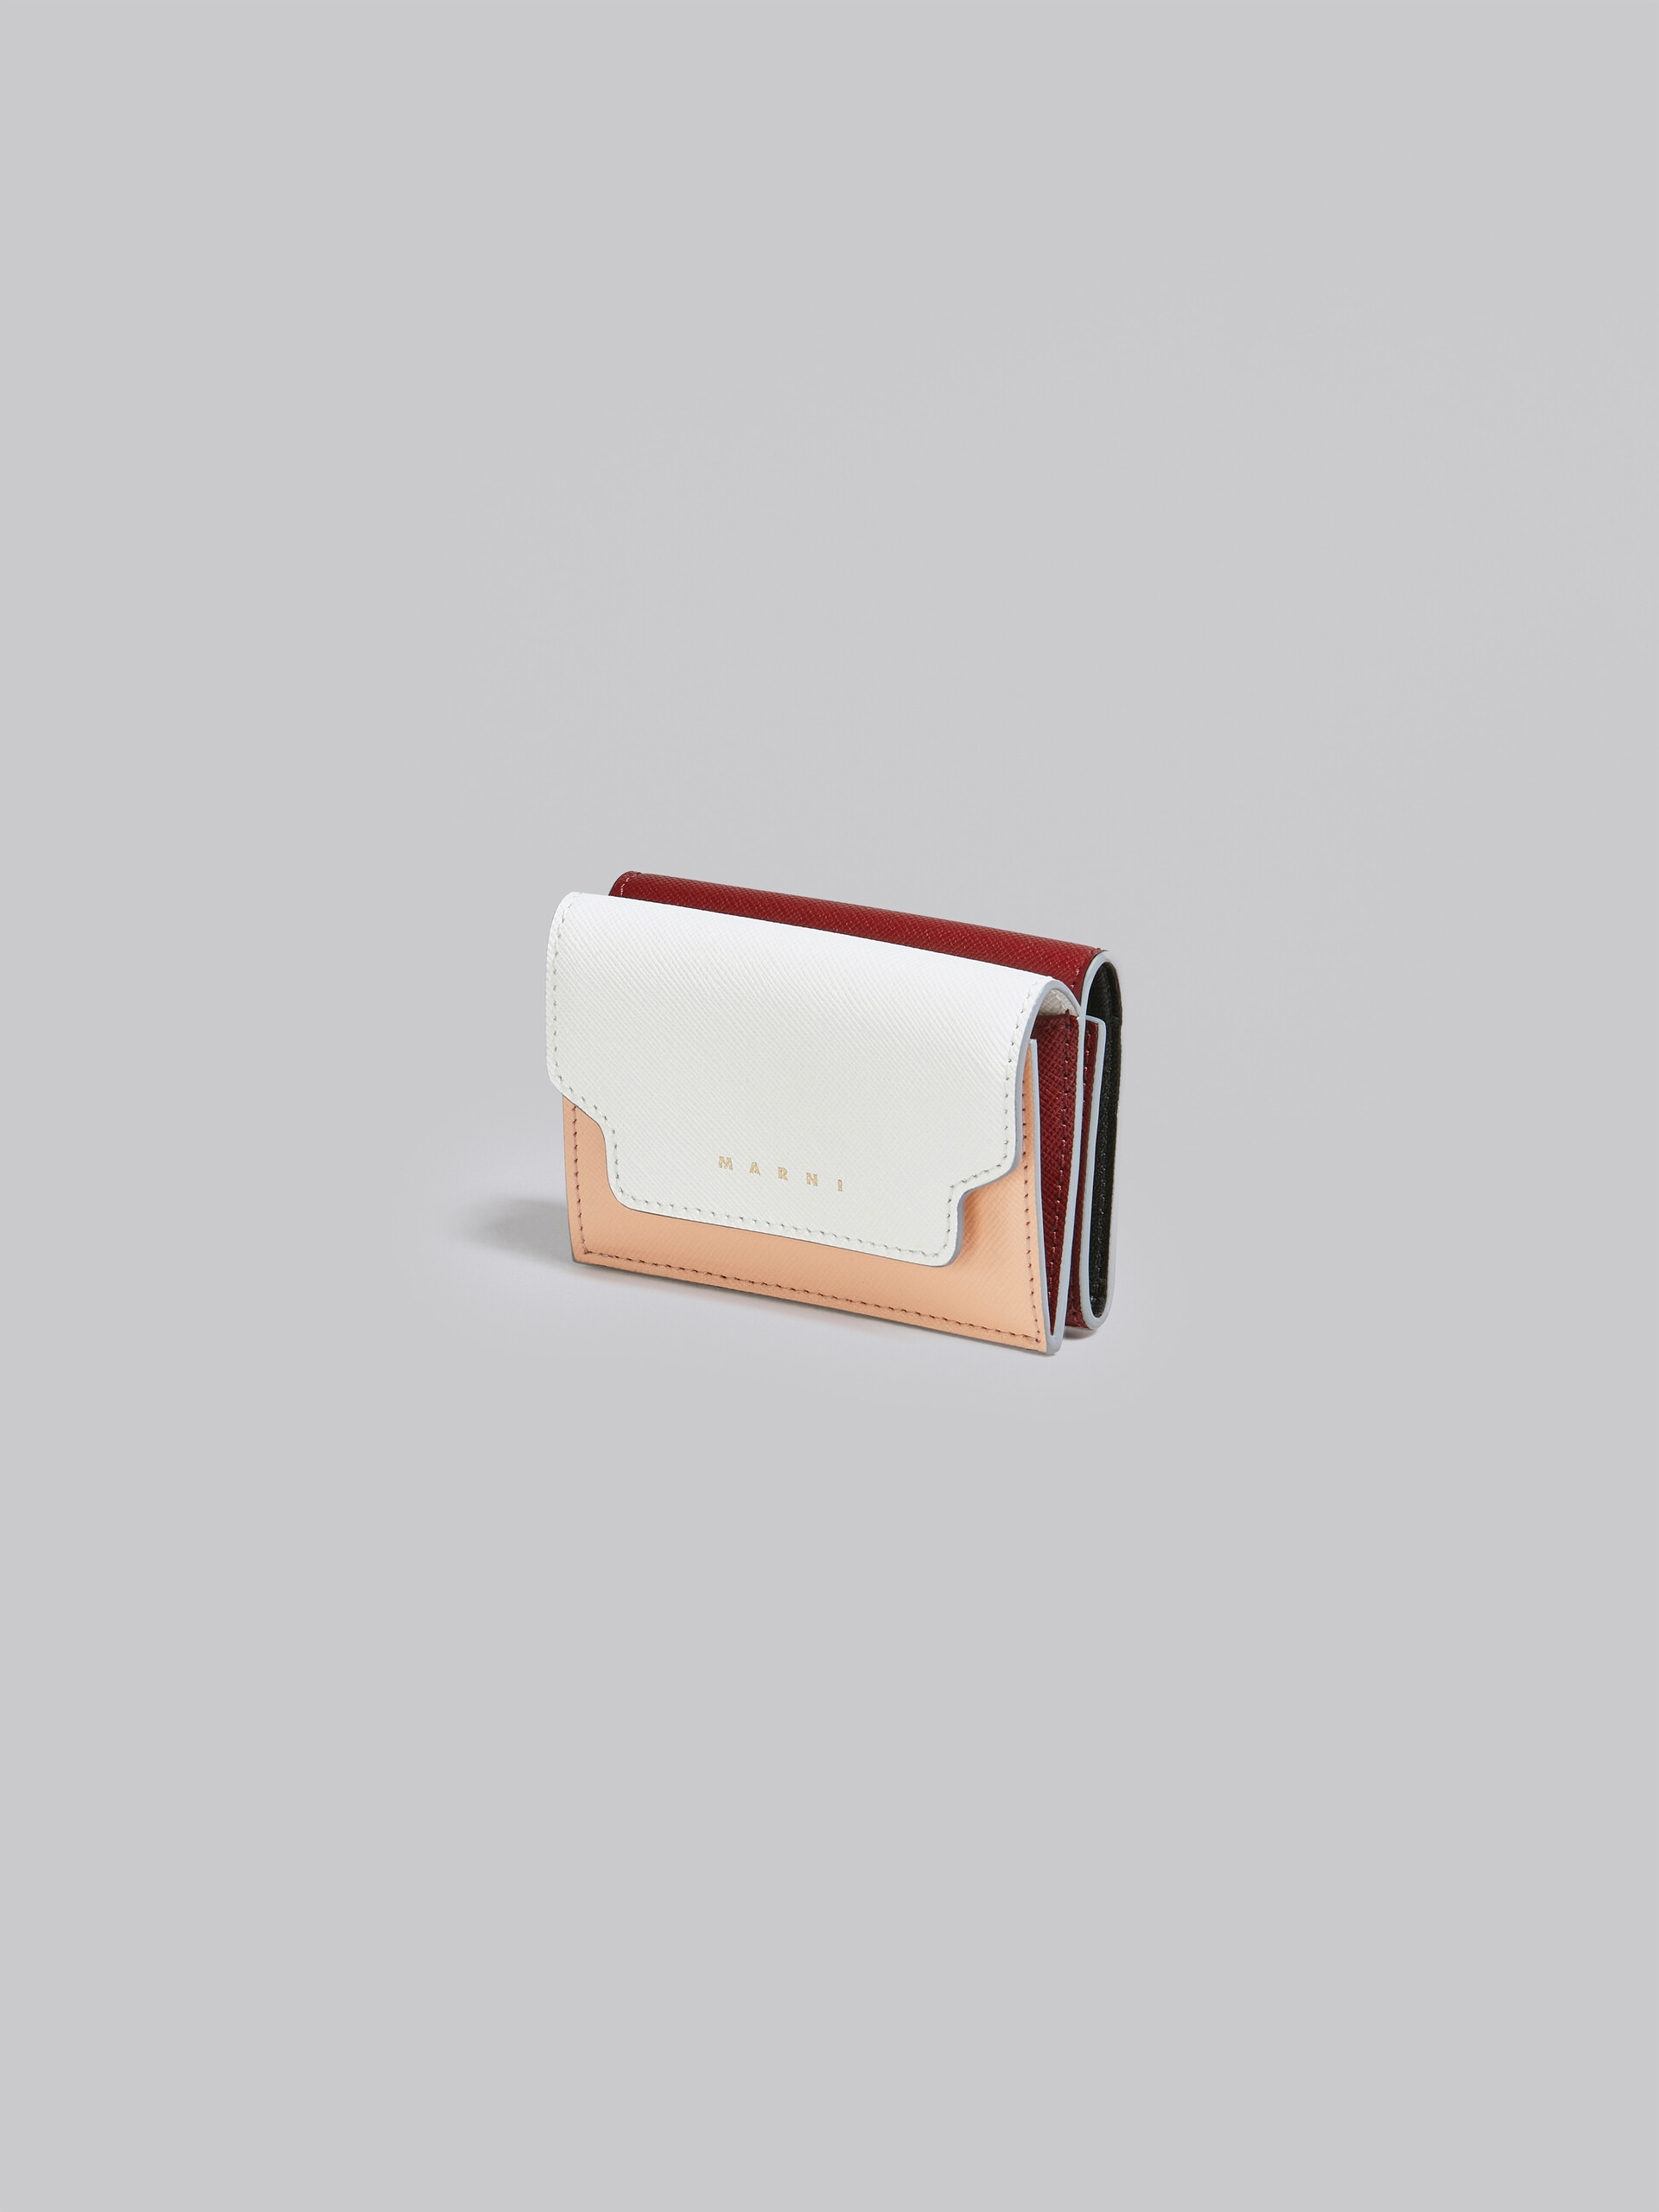 Portafoglio tri-fold in saffiano bianco rosa e rosso - Portafogli - Image 4